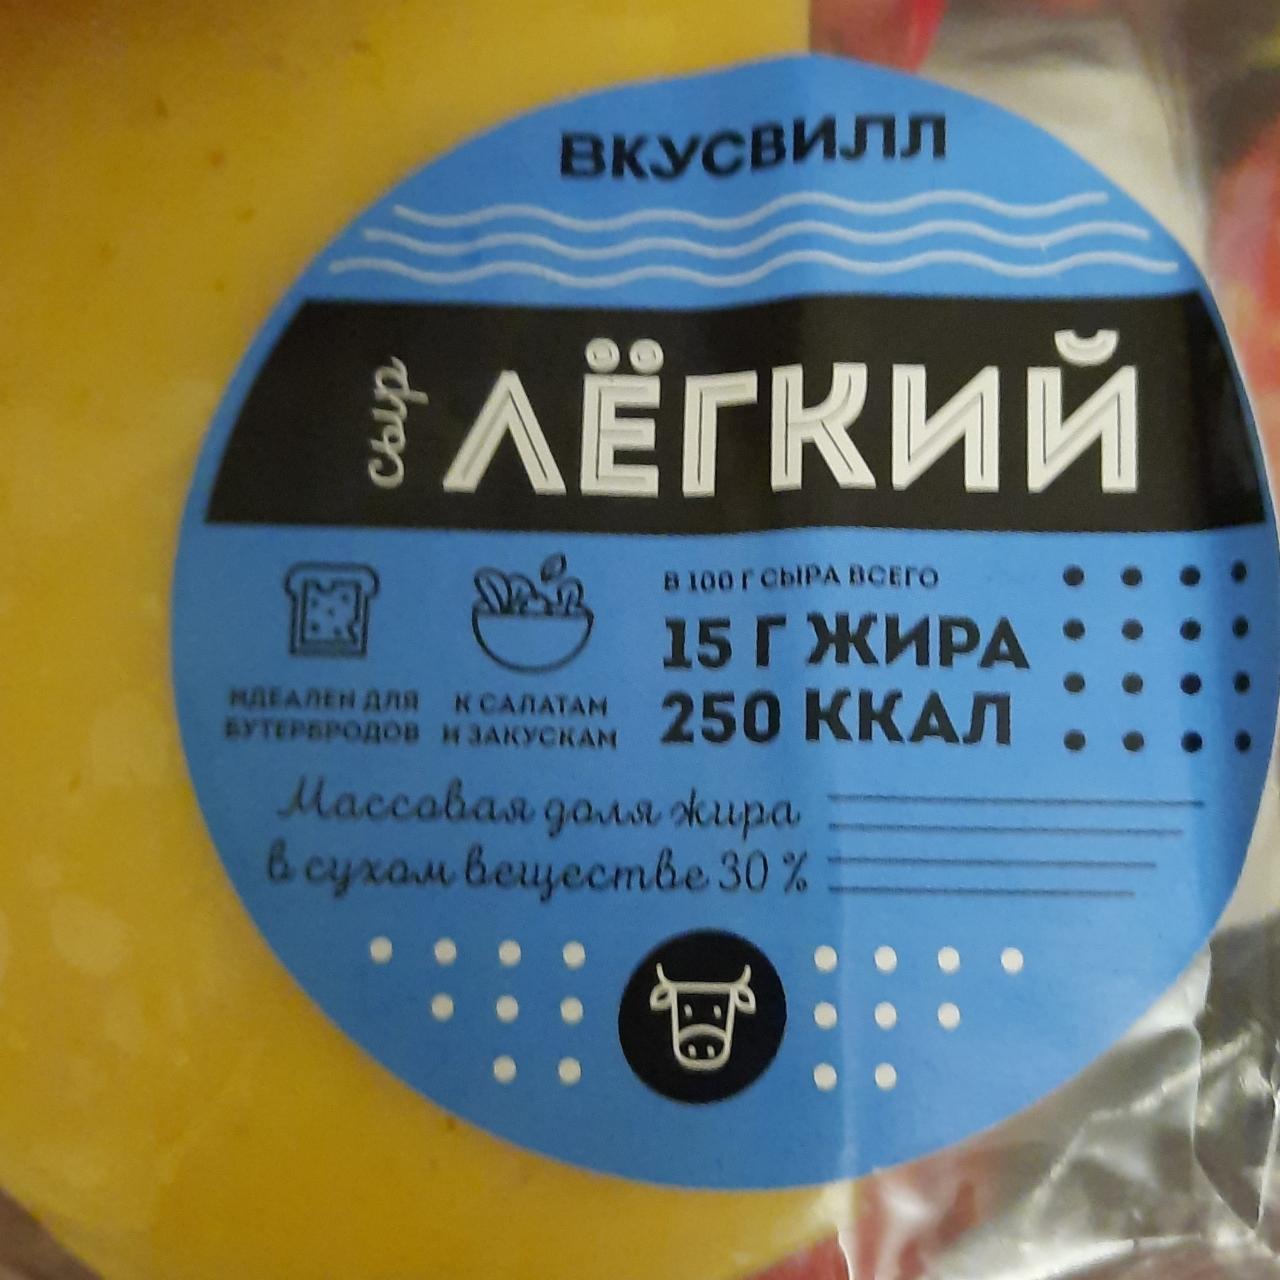 Фото - Лёгкий сыр 15 г жира ВкусВилл